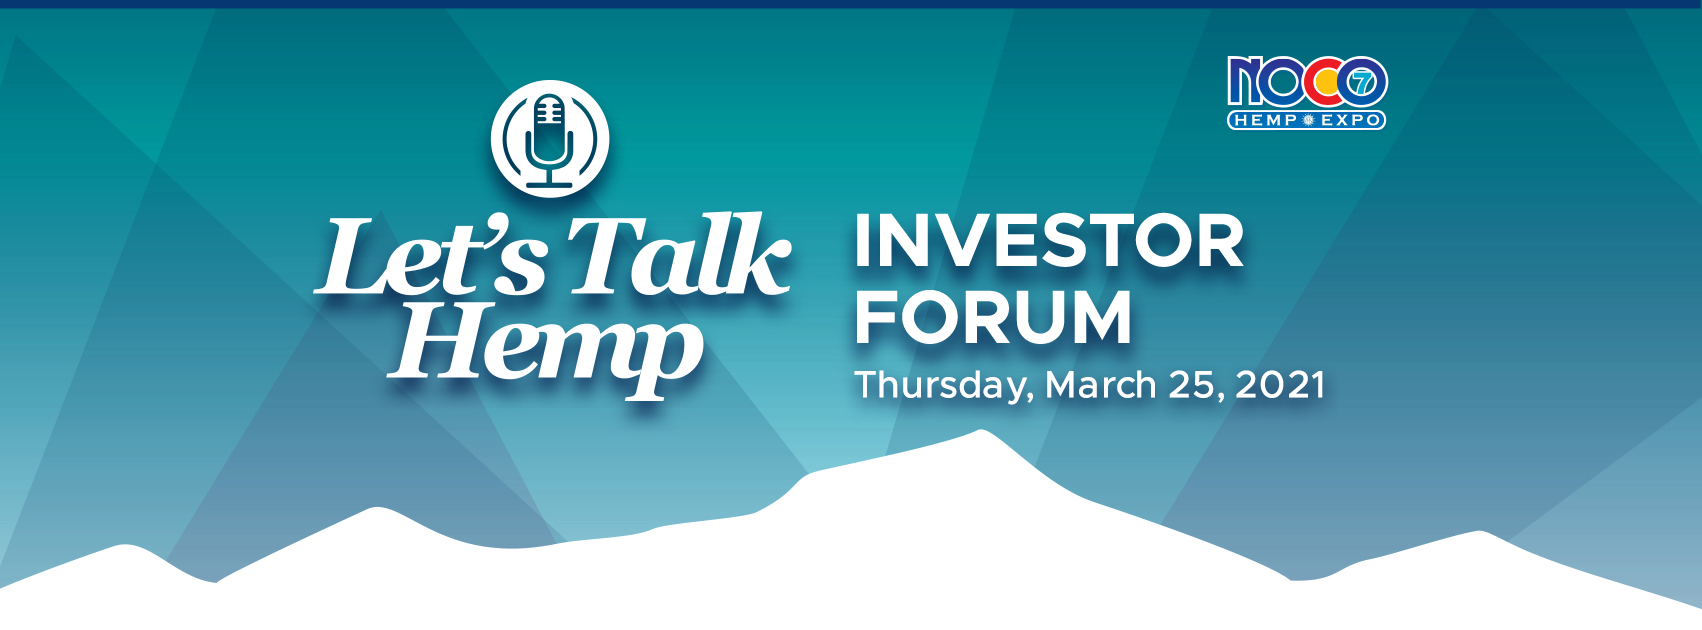 Let's Talk Hemp Investor Forum